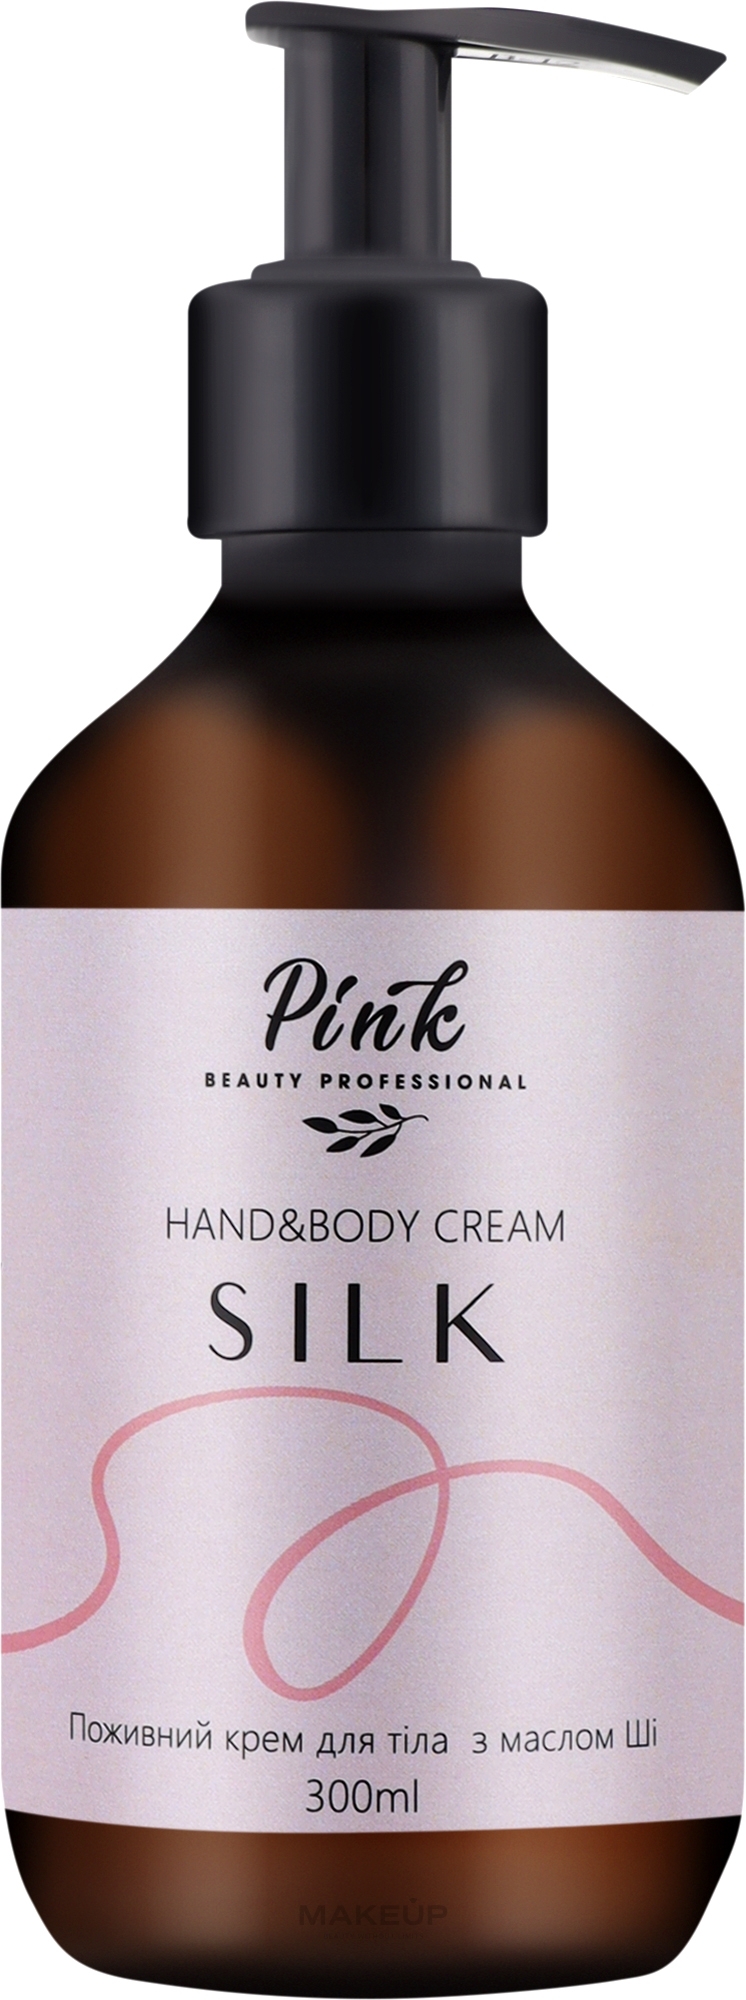 Питательный крем для тела и рук с маслом Ши "Silk" - Pink Hand & Body Cream — фото 300ml